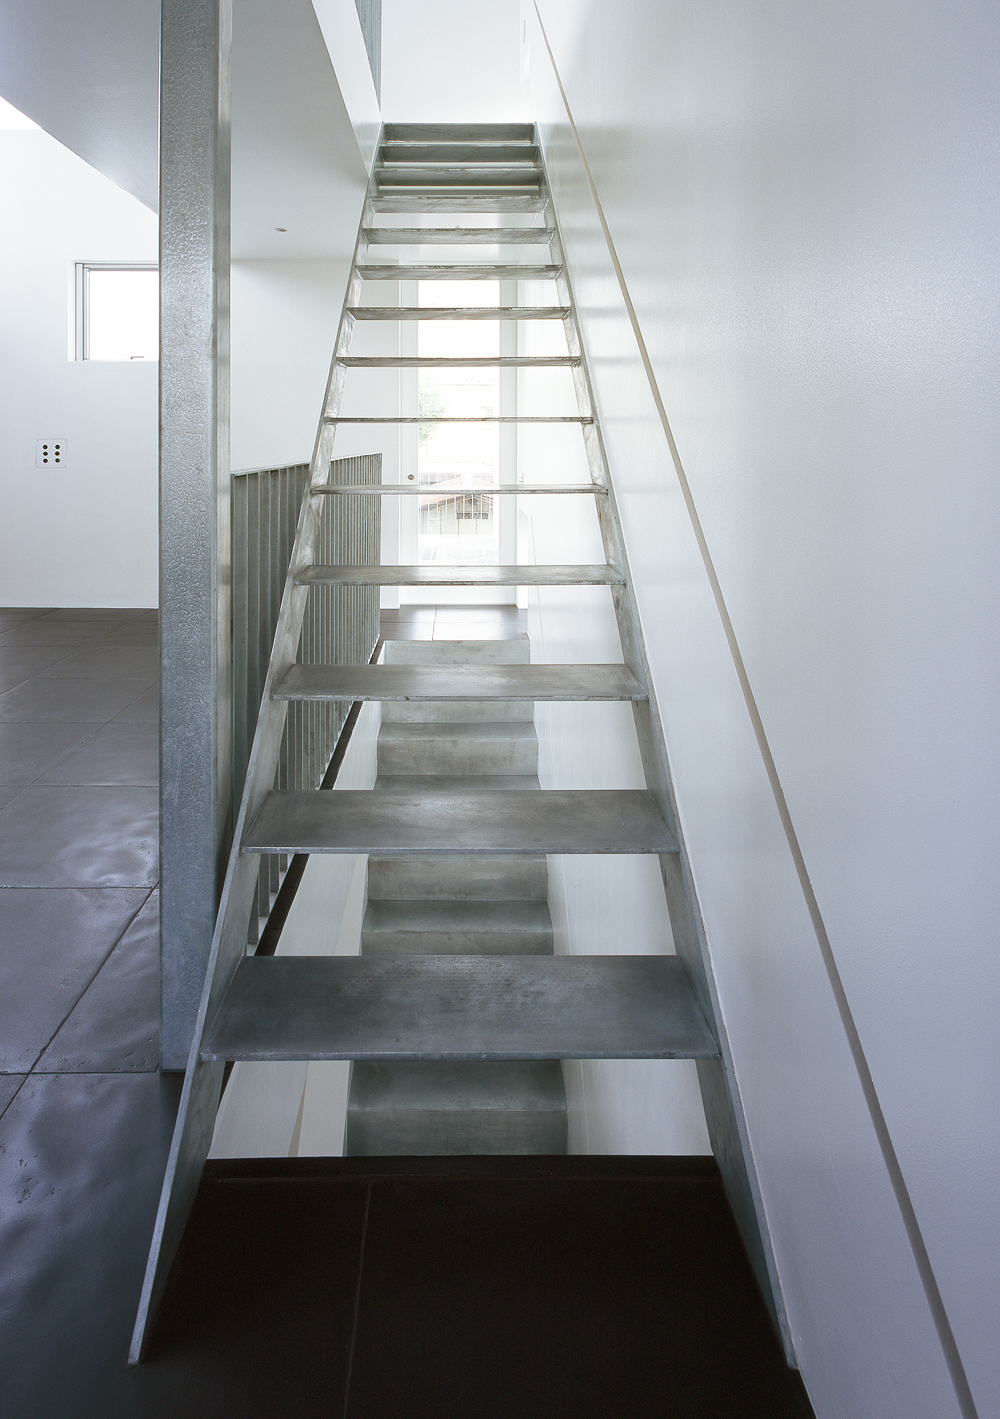 無機質な素材も、工業製品のような機能性美を感じる階段